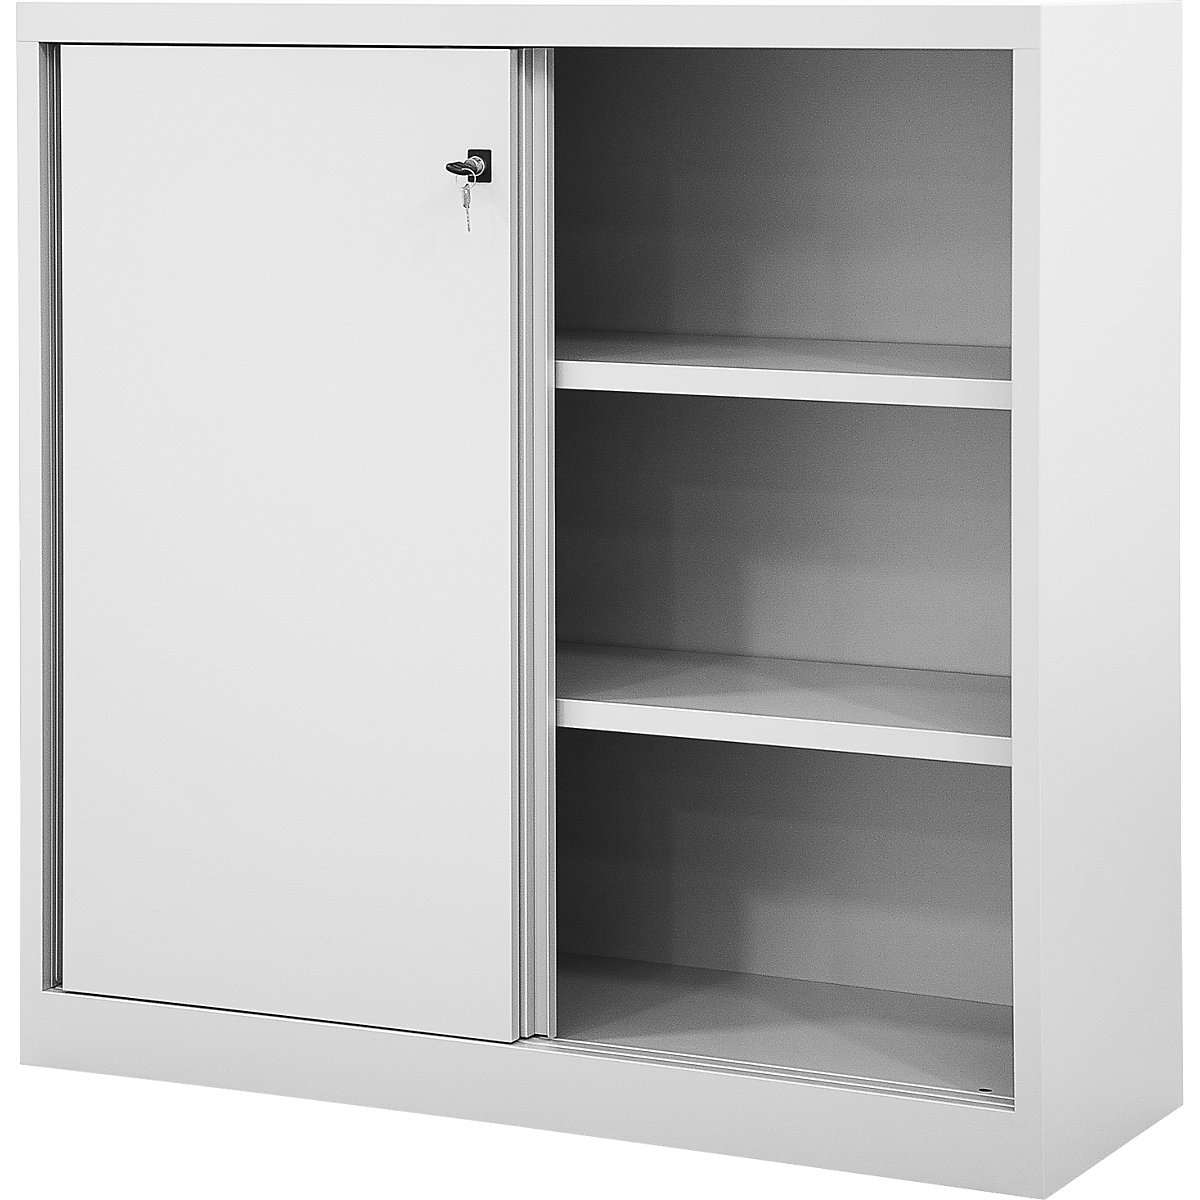 ECO sliding door cupboard – BISLEY, 2 shelves, 3 file heights, light grey-8